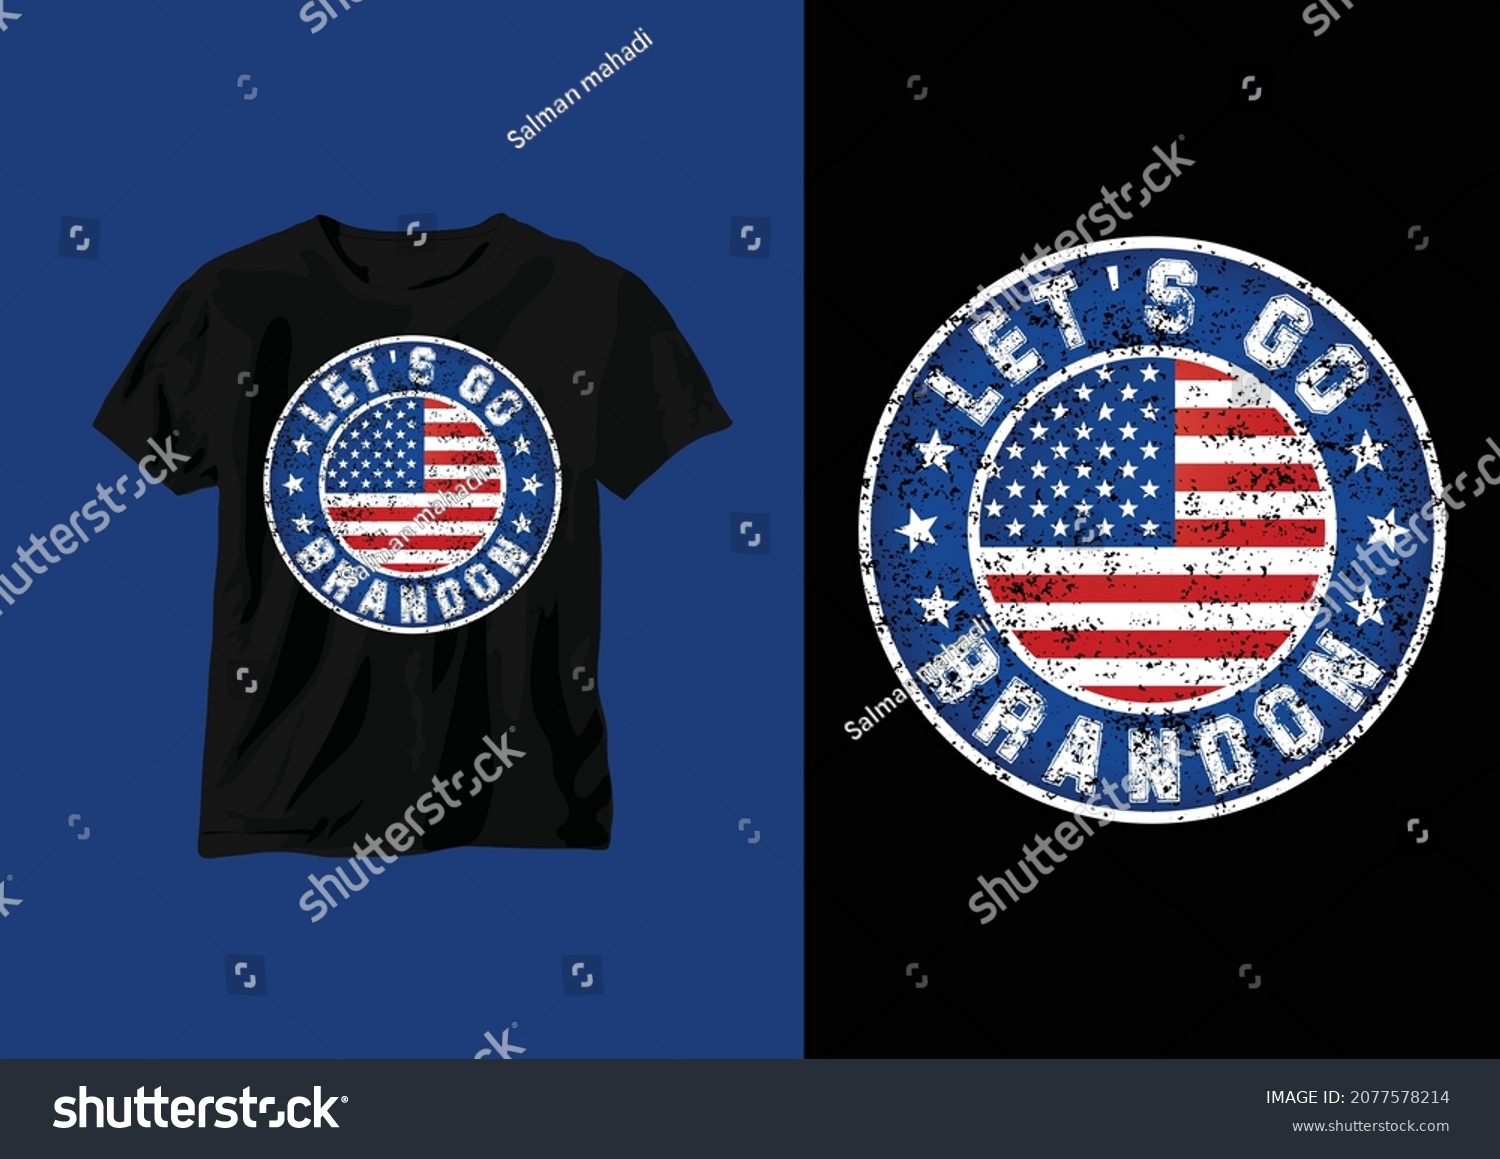 SVG of Let's go, Brandon T-shirt design. USA grunge flag t shirt design. Vector svg